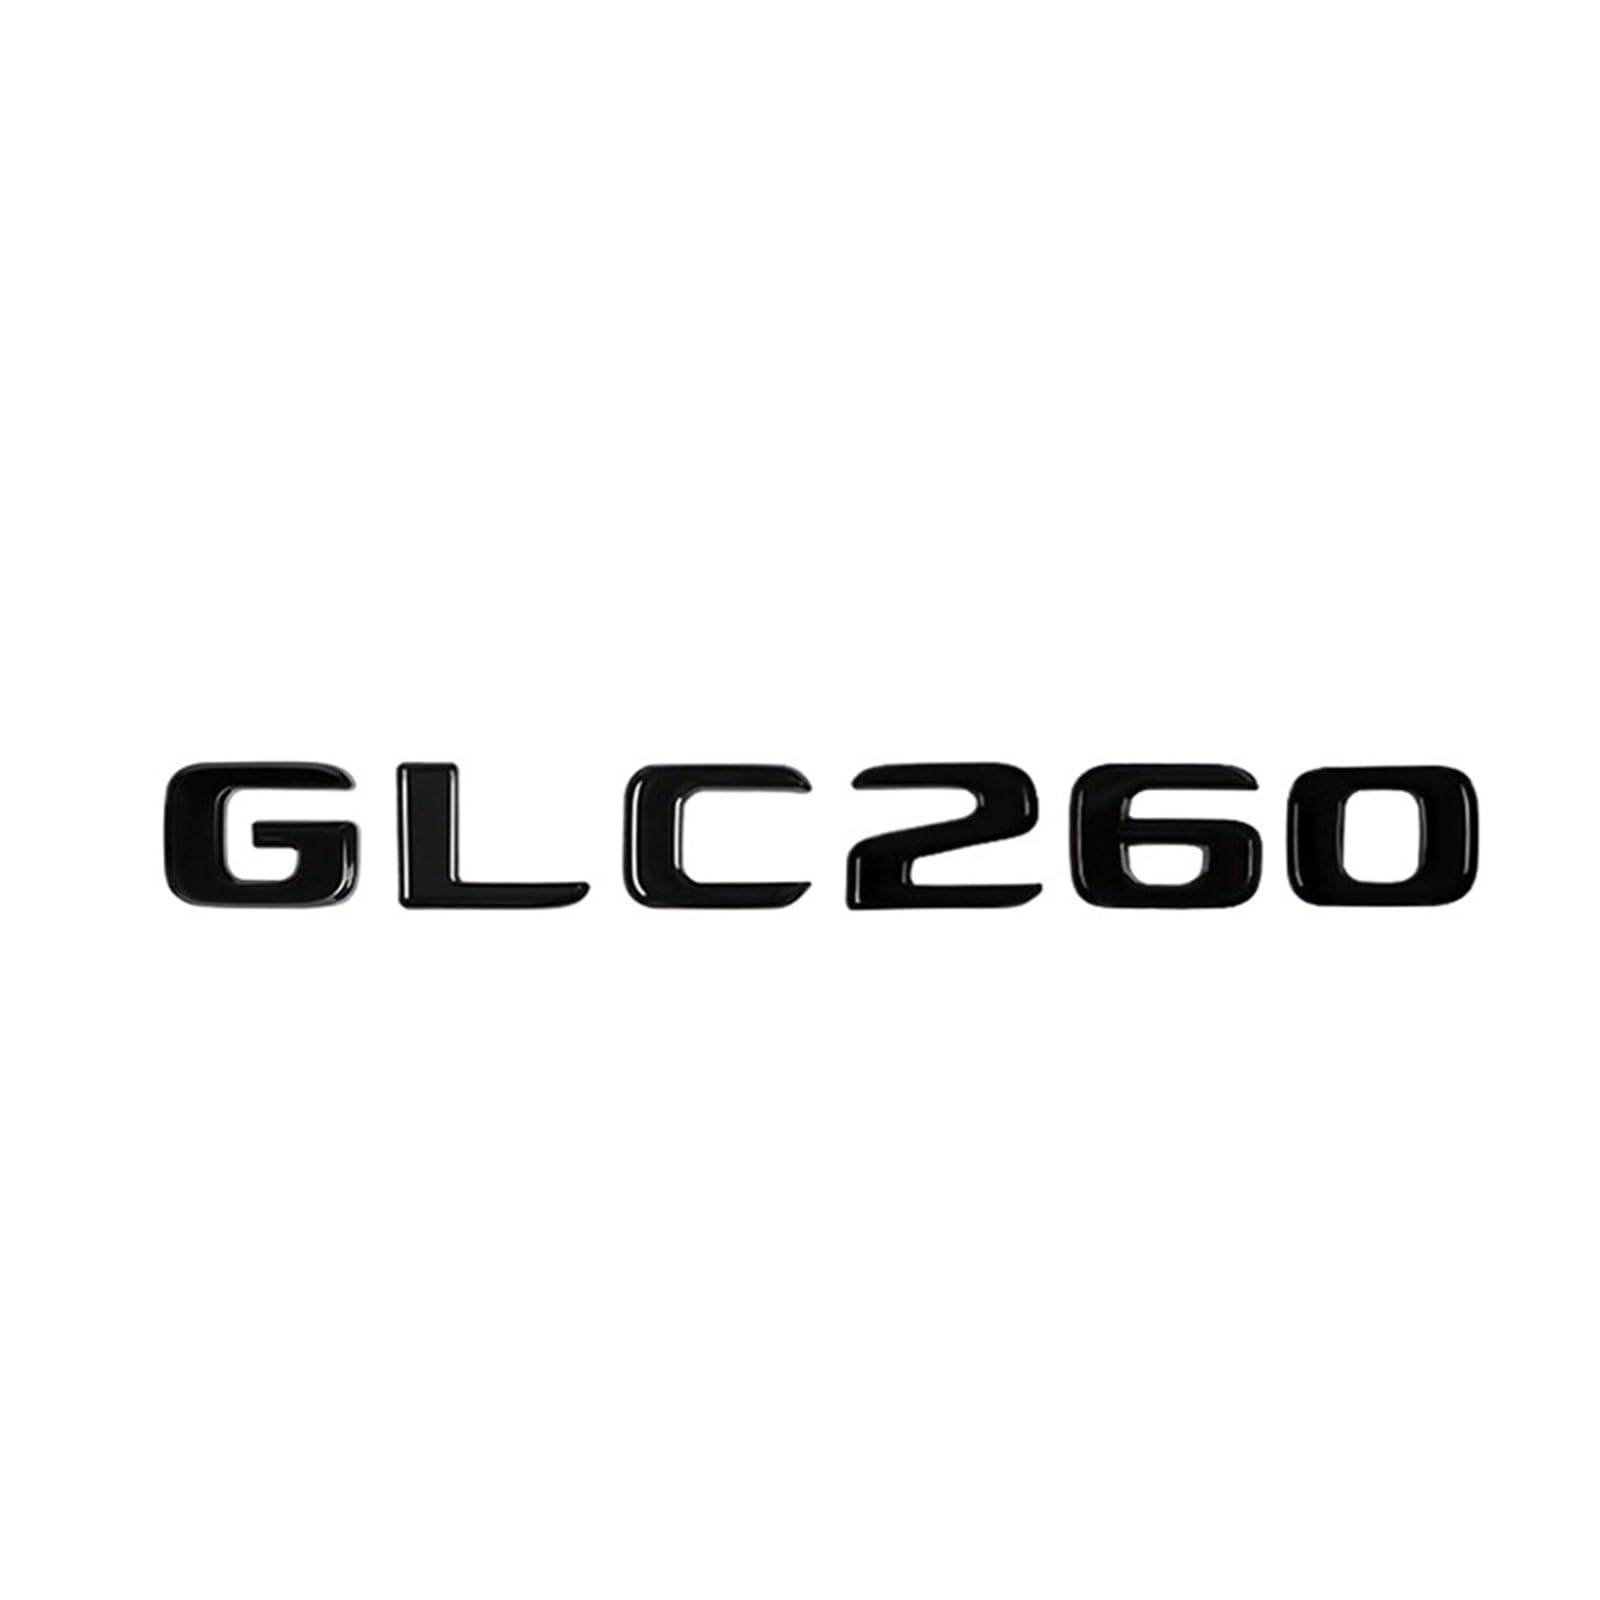 AQXYWQOL Auto 3D Kofferraum Buchstaben Logo Alphabet Abzeichen Emblem Aufkleber Aufkleber kompatibel mit GLC Klasse GLC63 GLC260 GLC300 4 Matic X253 X254 Farbe ist konstant, verblasst nicht und beschä von AQXYWQOL